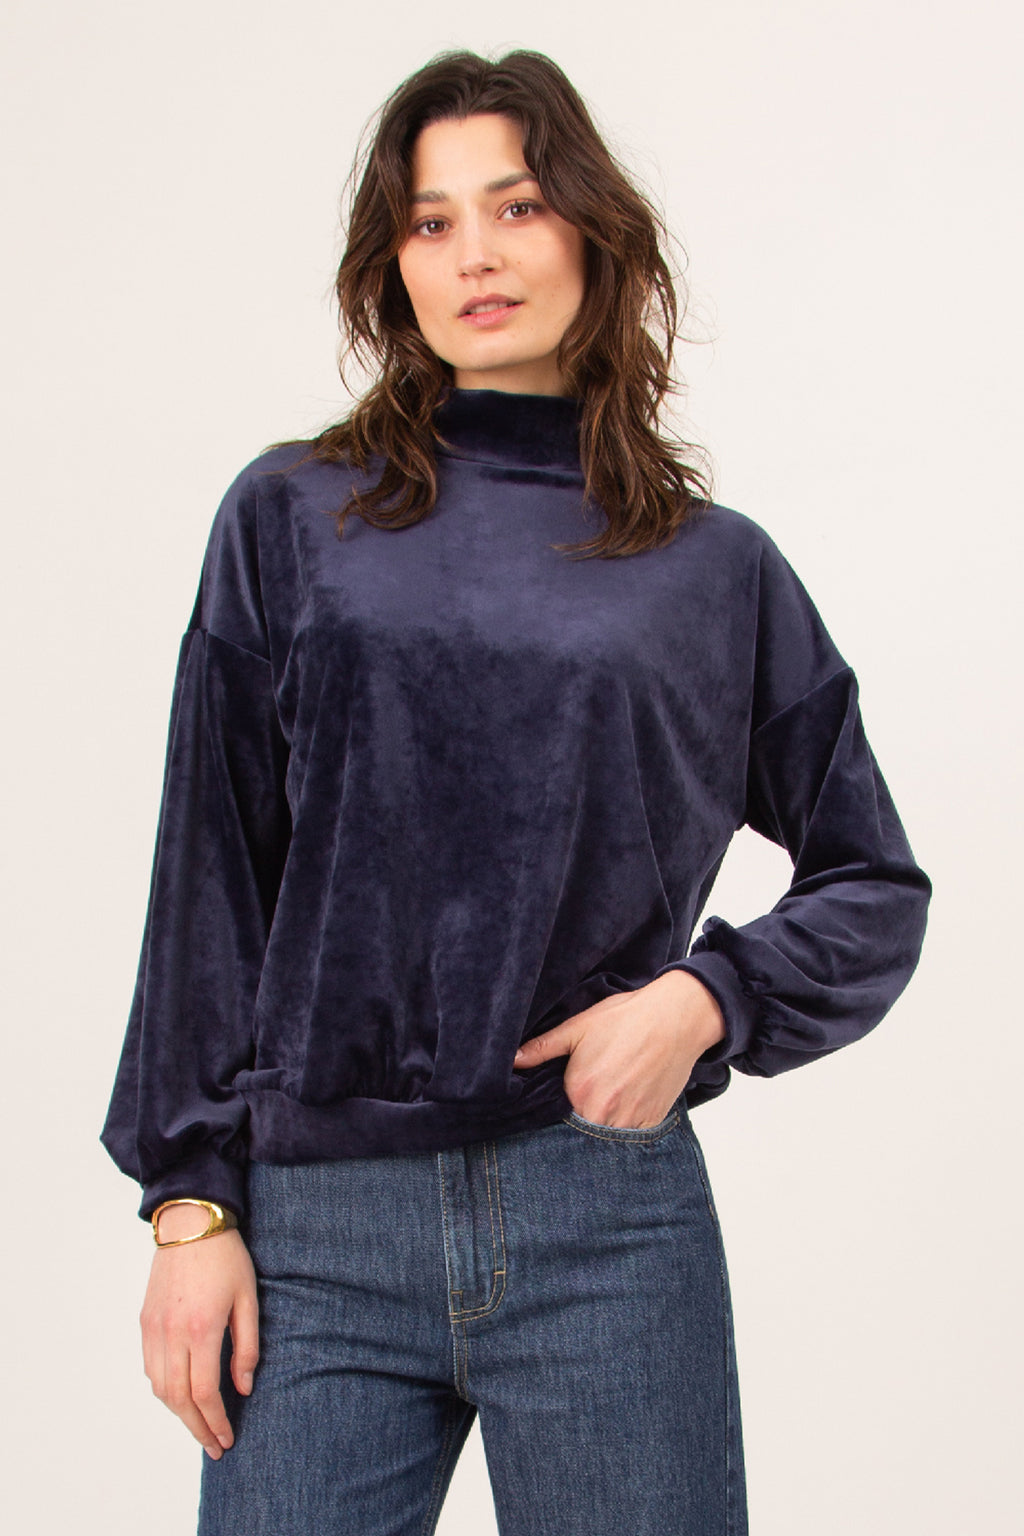 Upsa sweater in night blue velvet